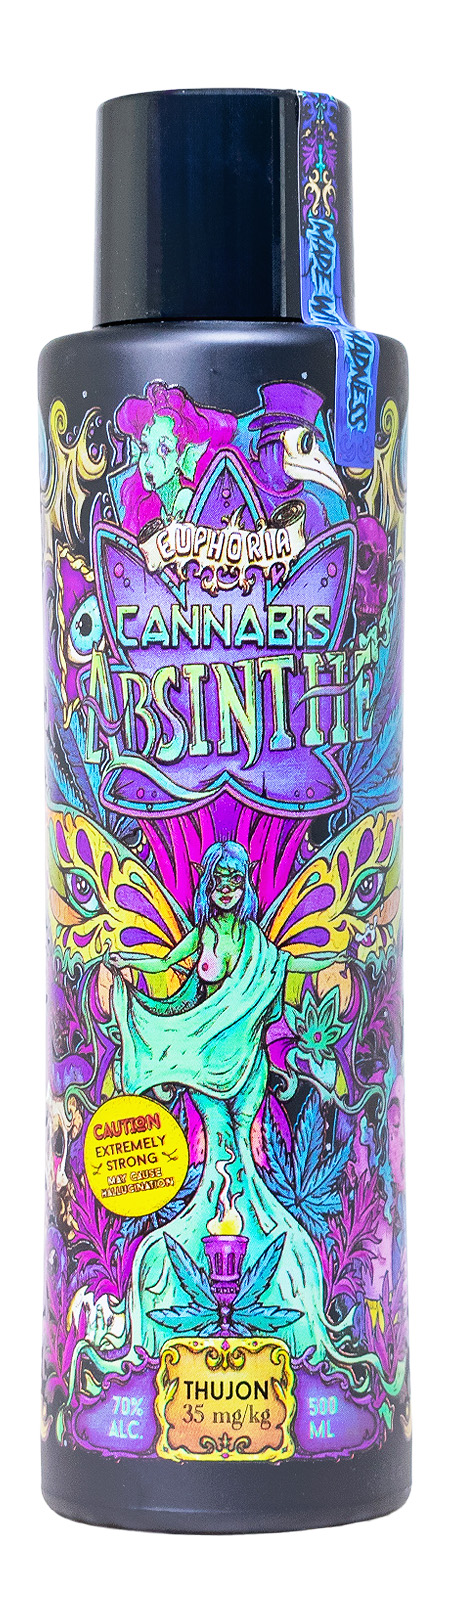 Euphoria Cannabis Absinth - 0,5L 70% vol